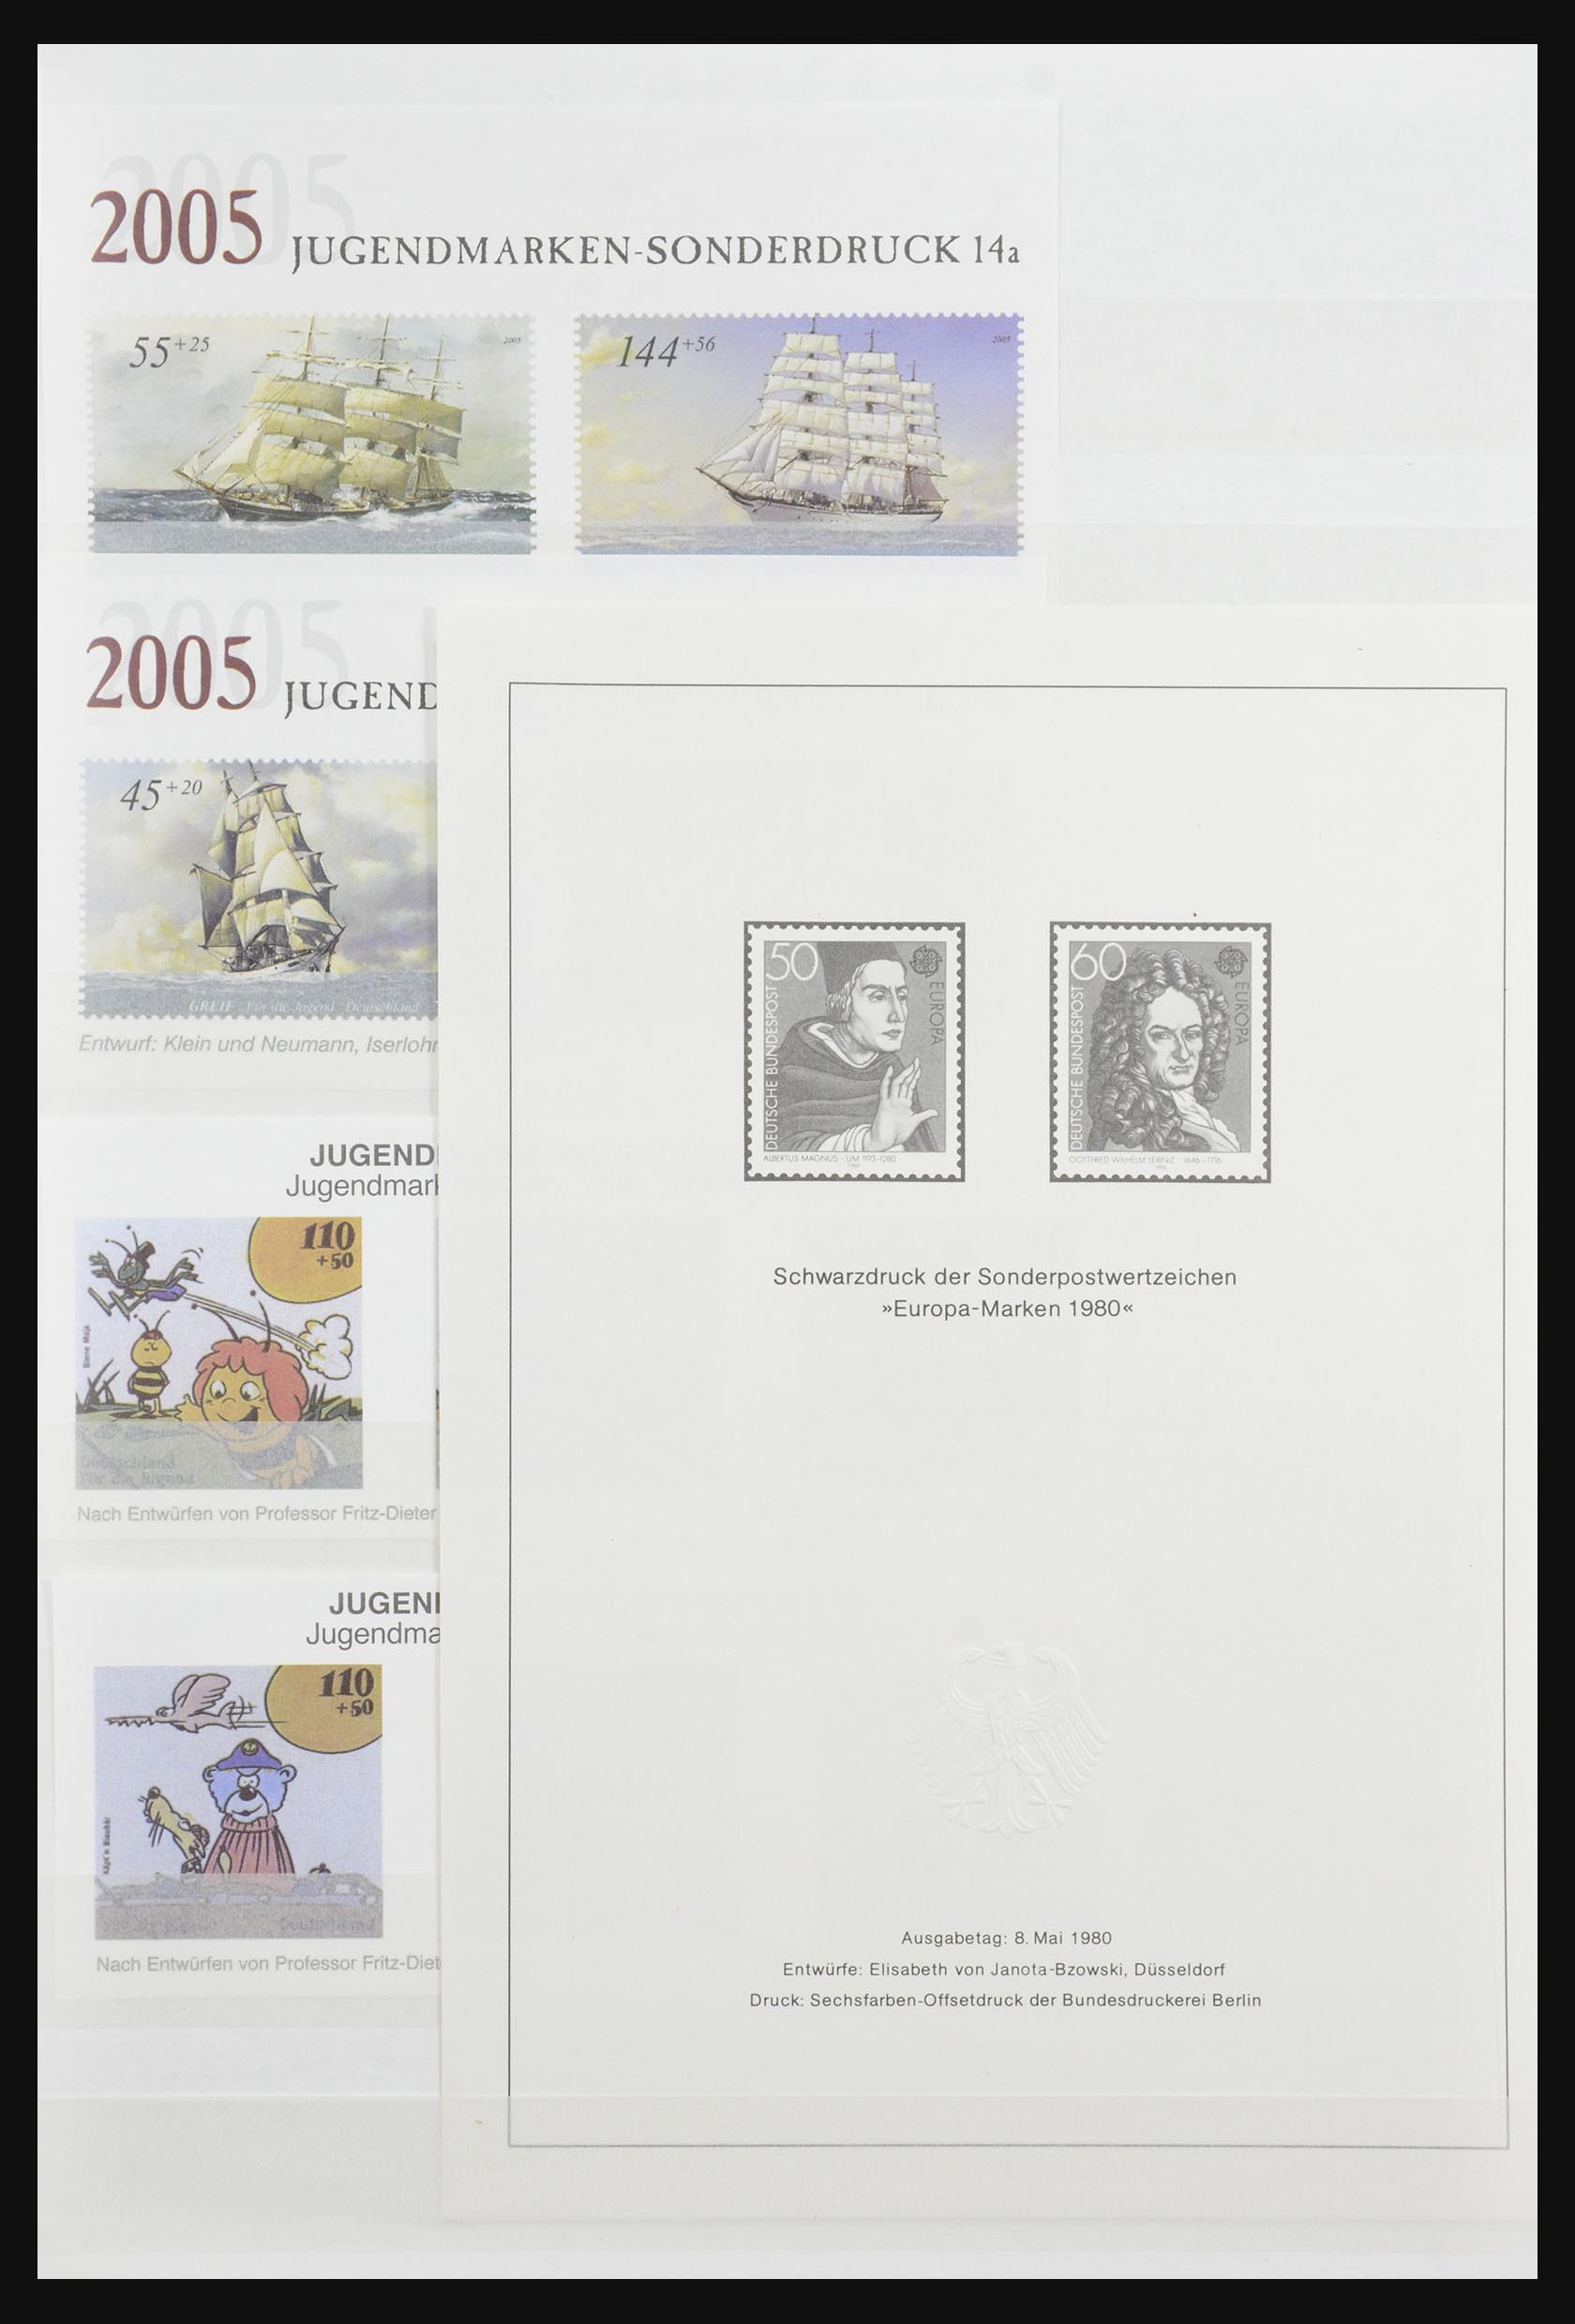 32050 020 - 32050 Bundespost speciale blokken 1980-2010.